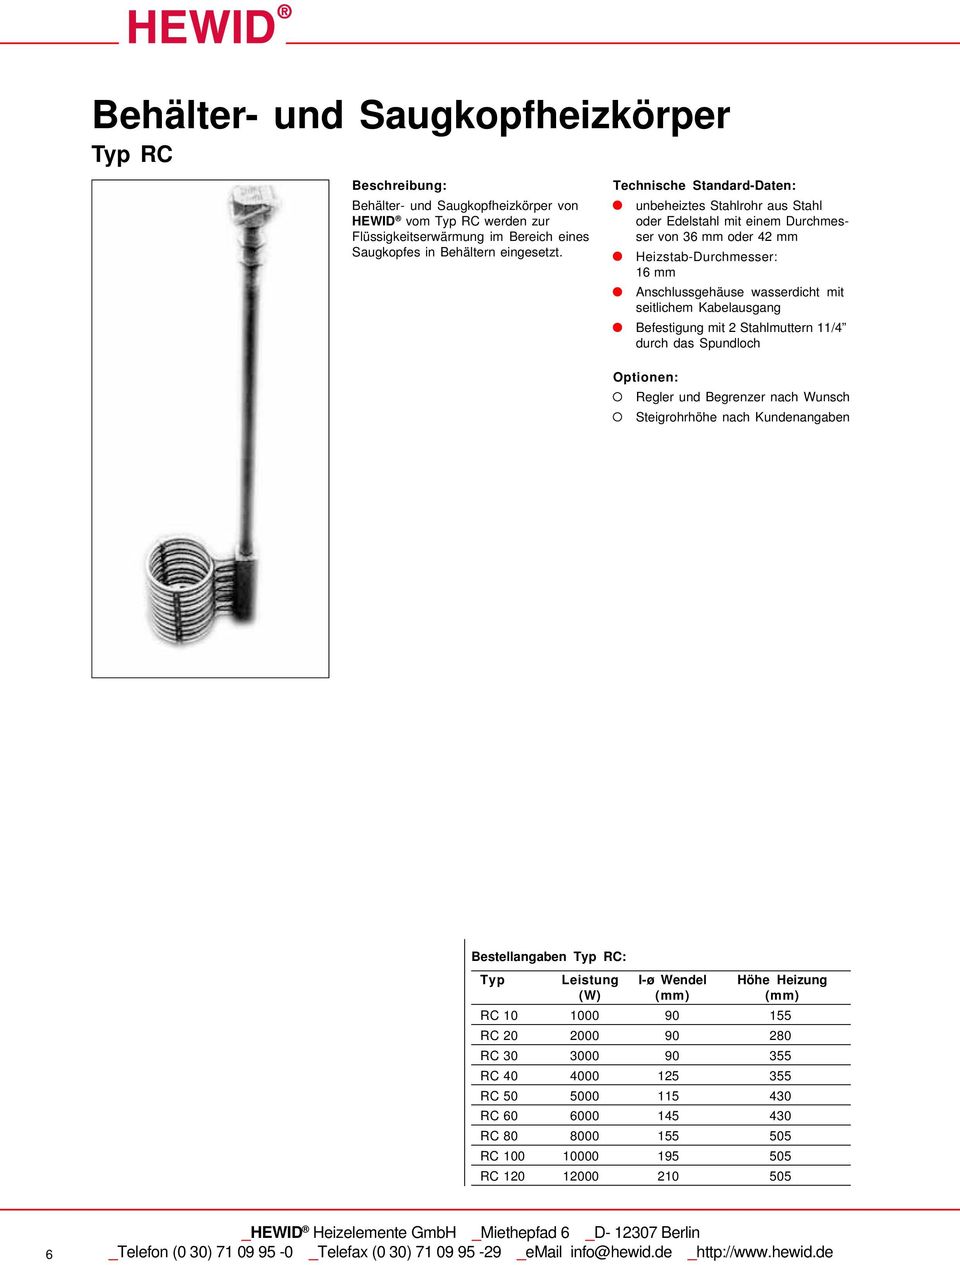 Technische Standard-Daten: unbeheiztes Stahlrohr aus Stahl oder Edelstahl mit einem Durchmesser von 36 mm oder 42 mm Heizstab-Durchmesser: 16 mm Anschlussgehäuse wasserdicht mit seitlichem